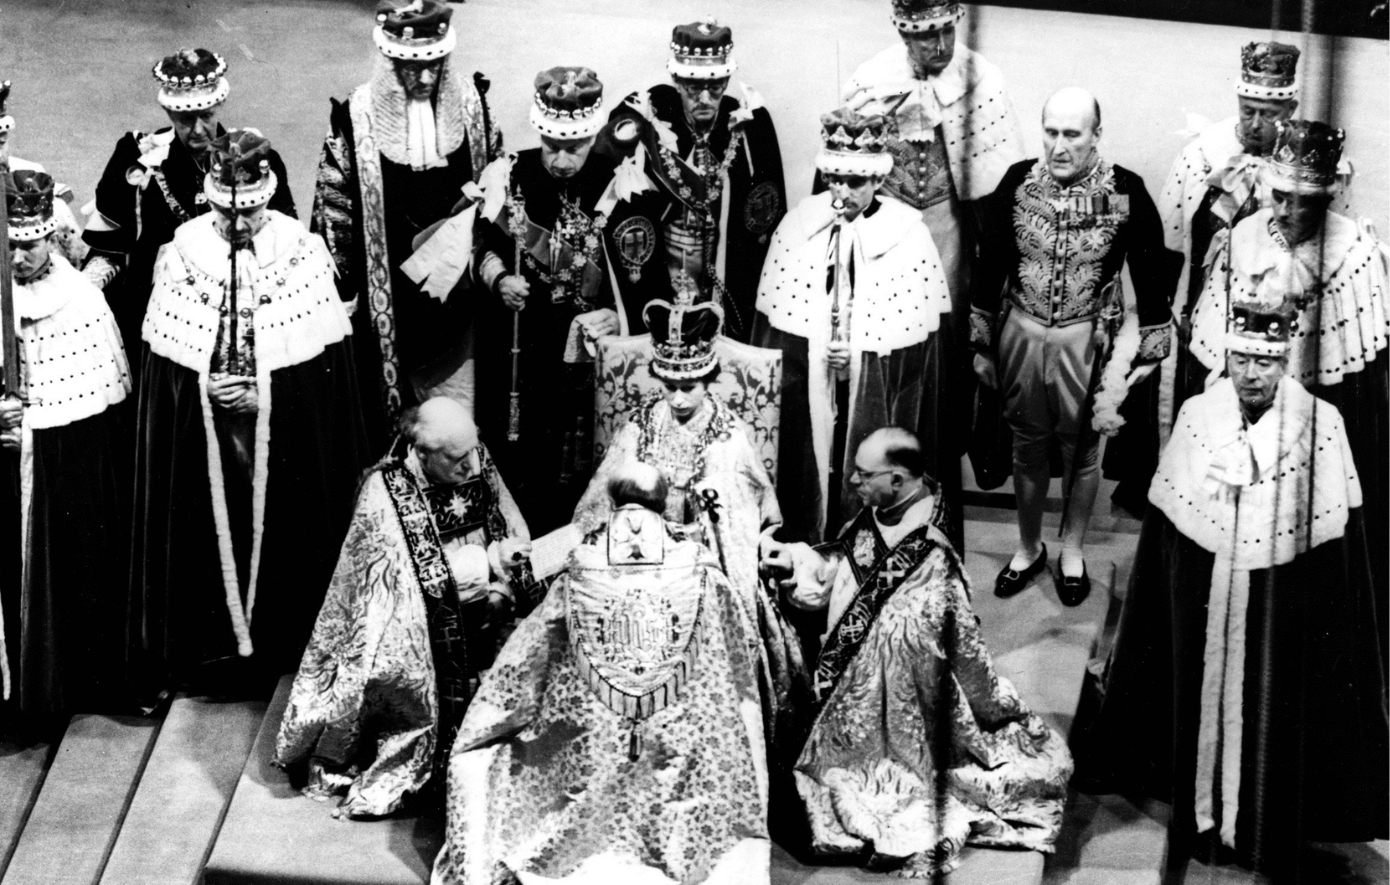 Σαν σήμερα 2 Ιουνίου: Η στέψη της Βασίλισσας Ελισάβετ Β&#8217; &#8211; Μια μέρα λαμπρότητας και μεγαλείου για τη Βρετανία